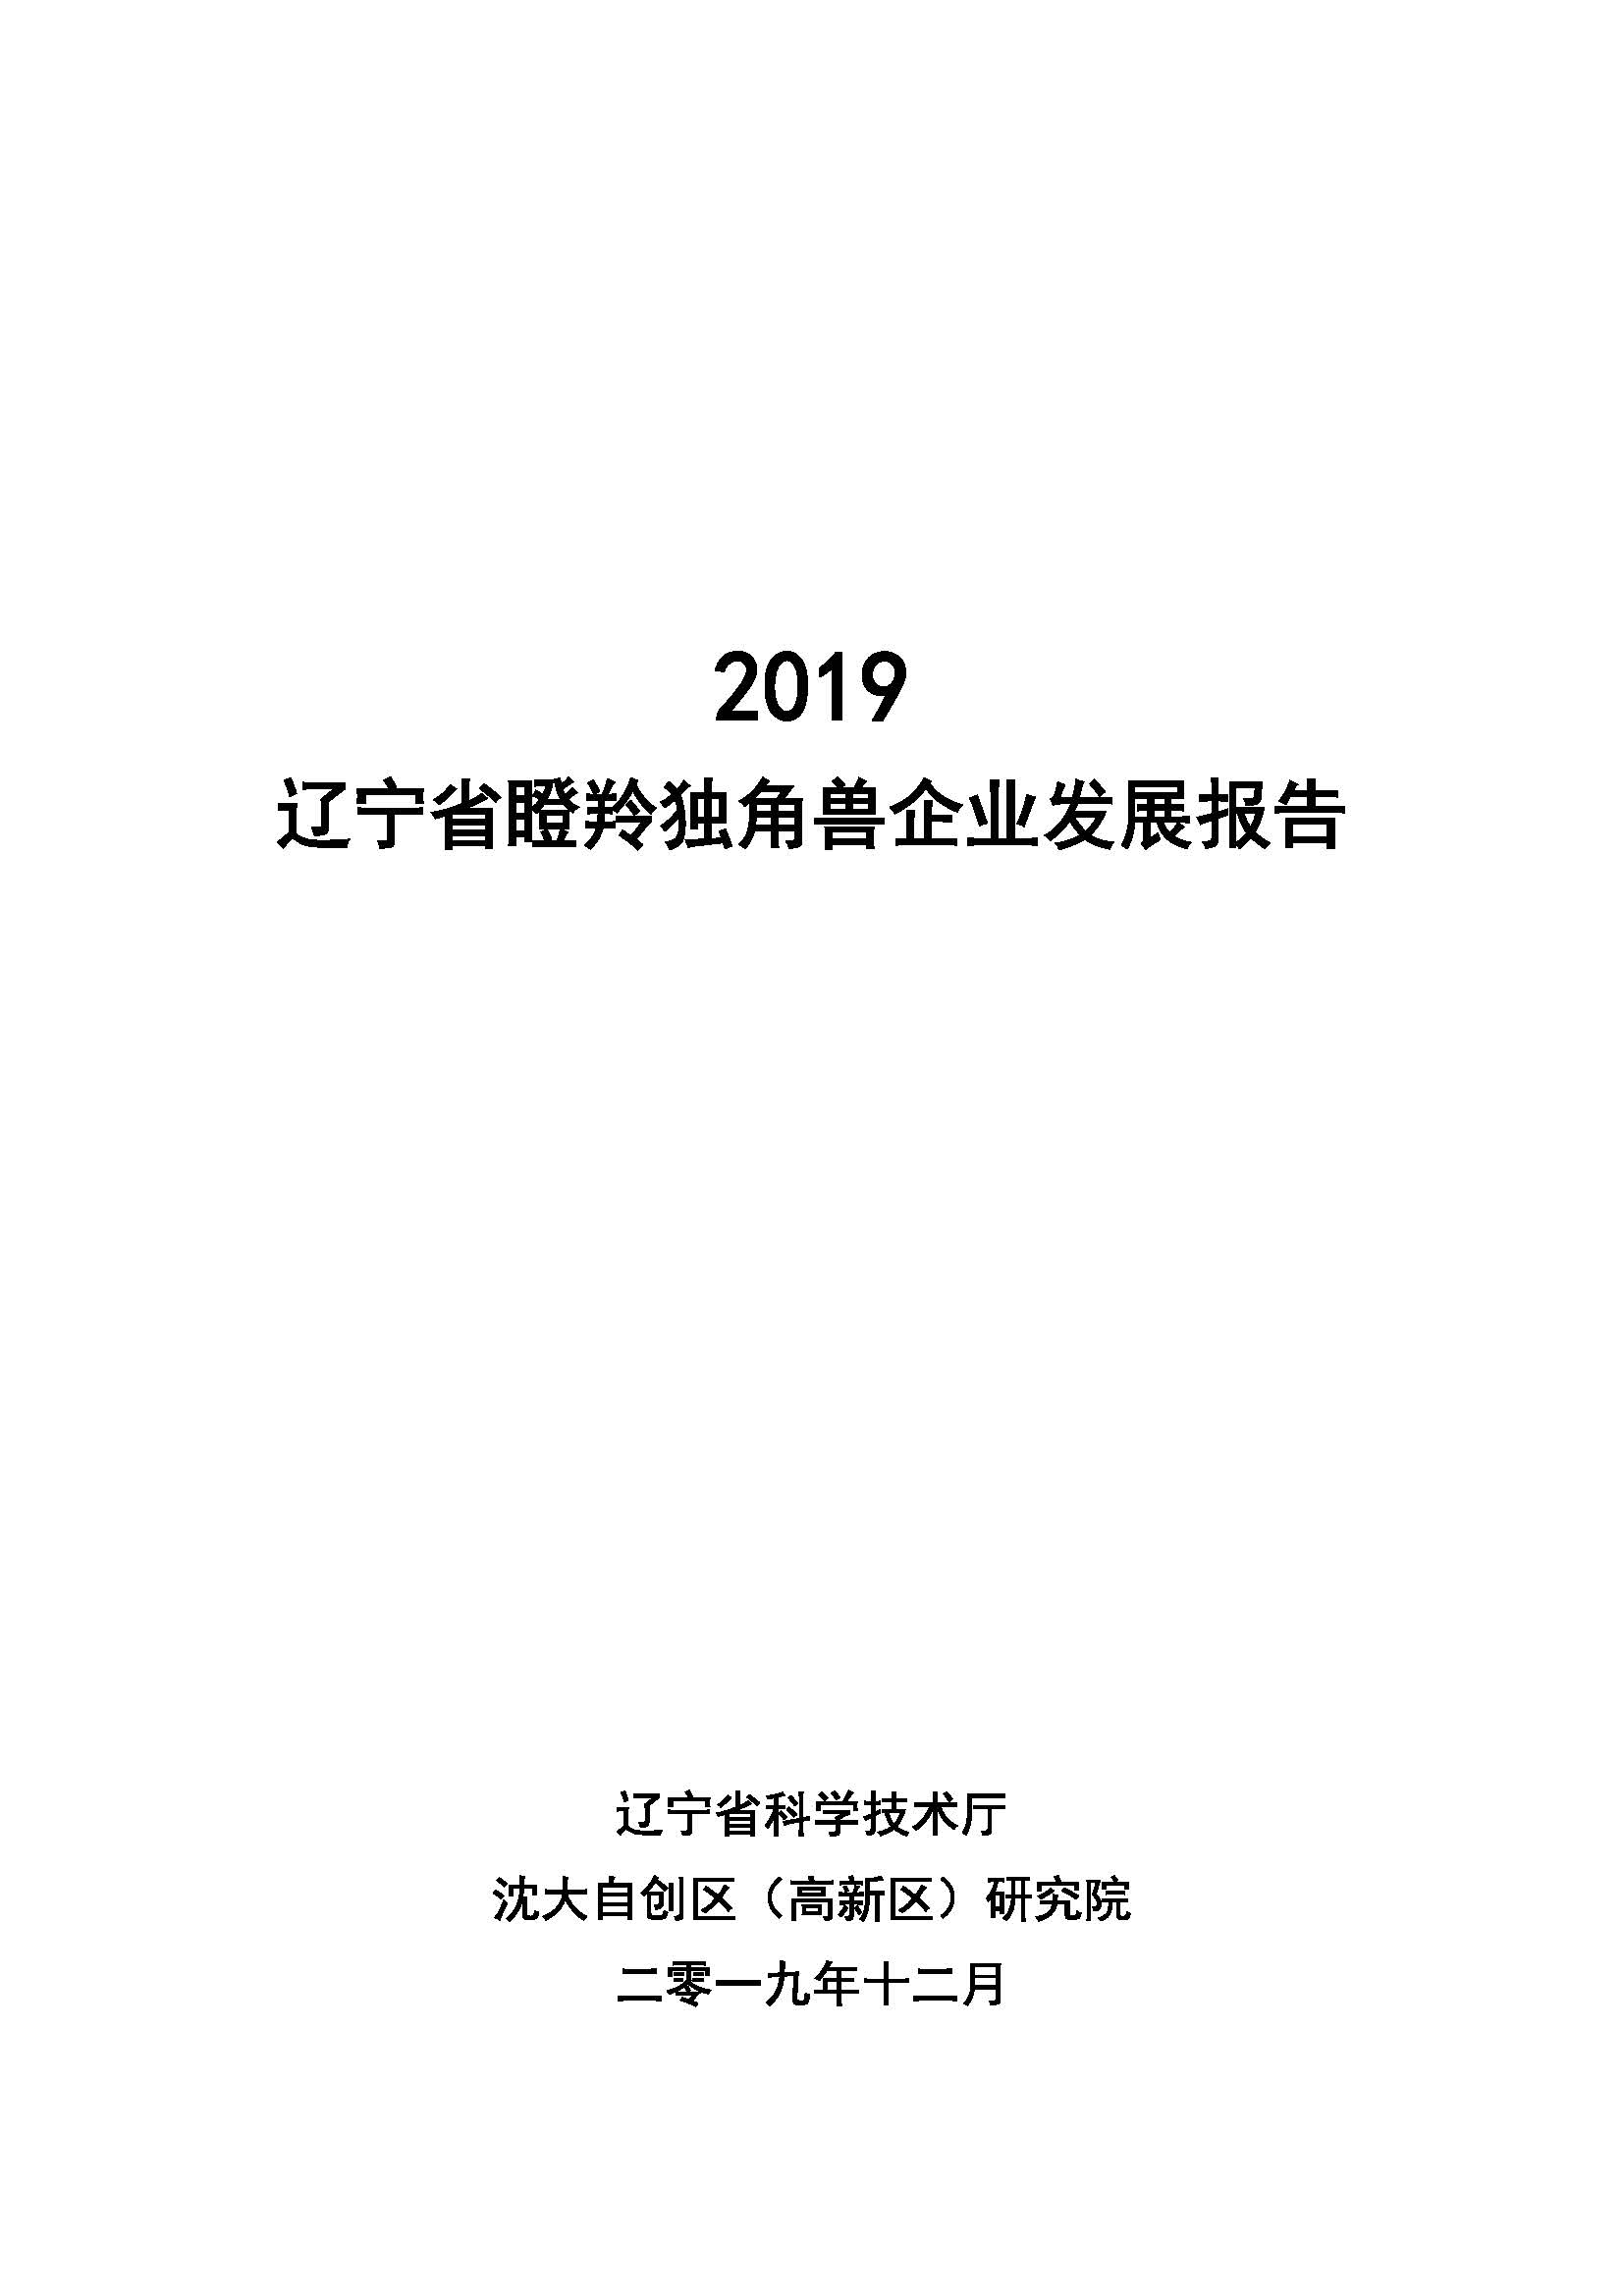 2019辽宁省瞪羚独角兽企业发展报告_页面_01.jpg